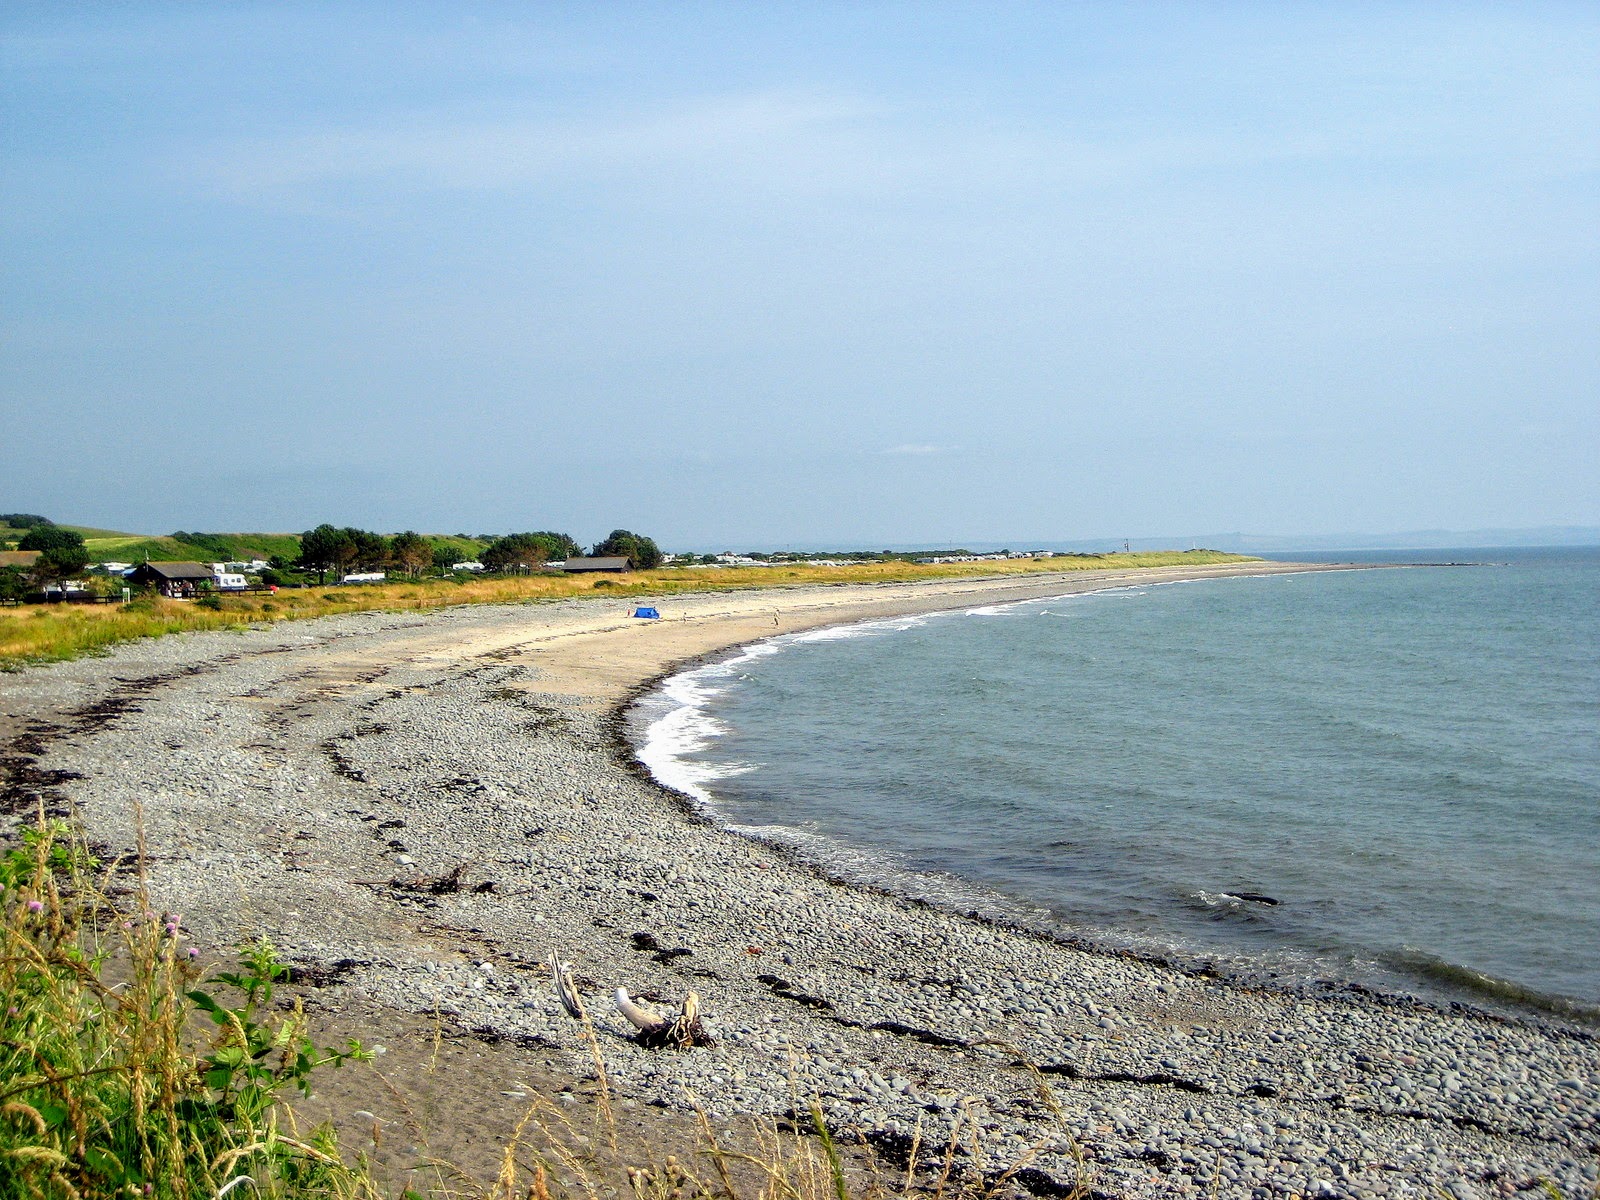 New England Bay Beach'in fotoğrafı geniş plaj ile birlikte